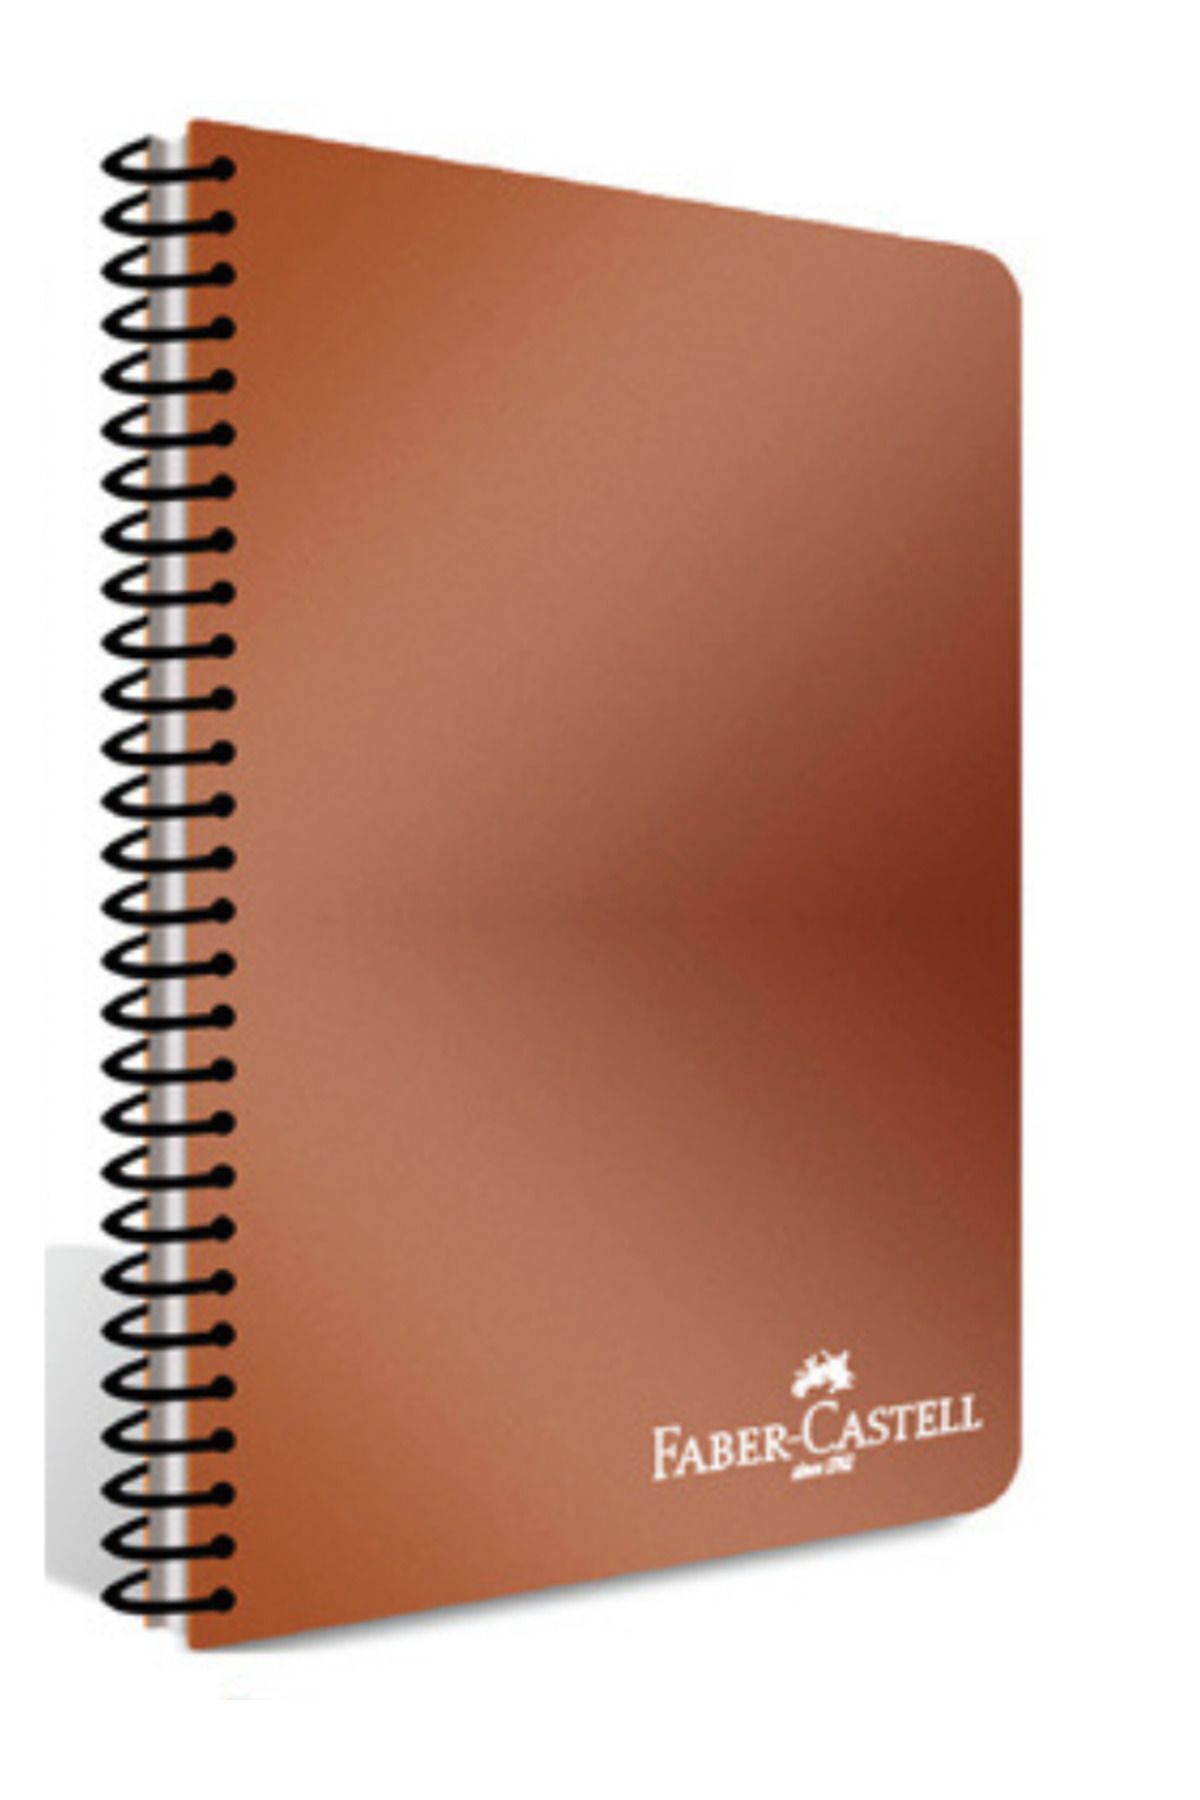 Faber Castell PLASTİK KAPAKLI SPİRALLİ DEFTER METALİK RENKLER A4 80 YP. ÇİZGİSİZ – METALİK KİREMİT